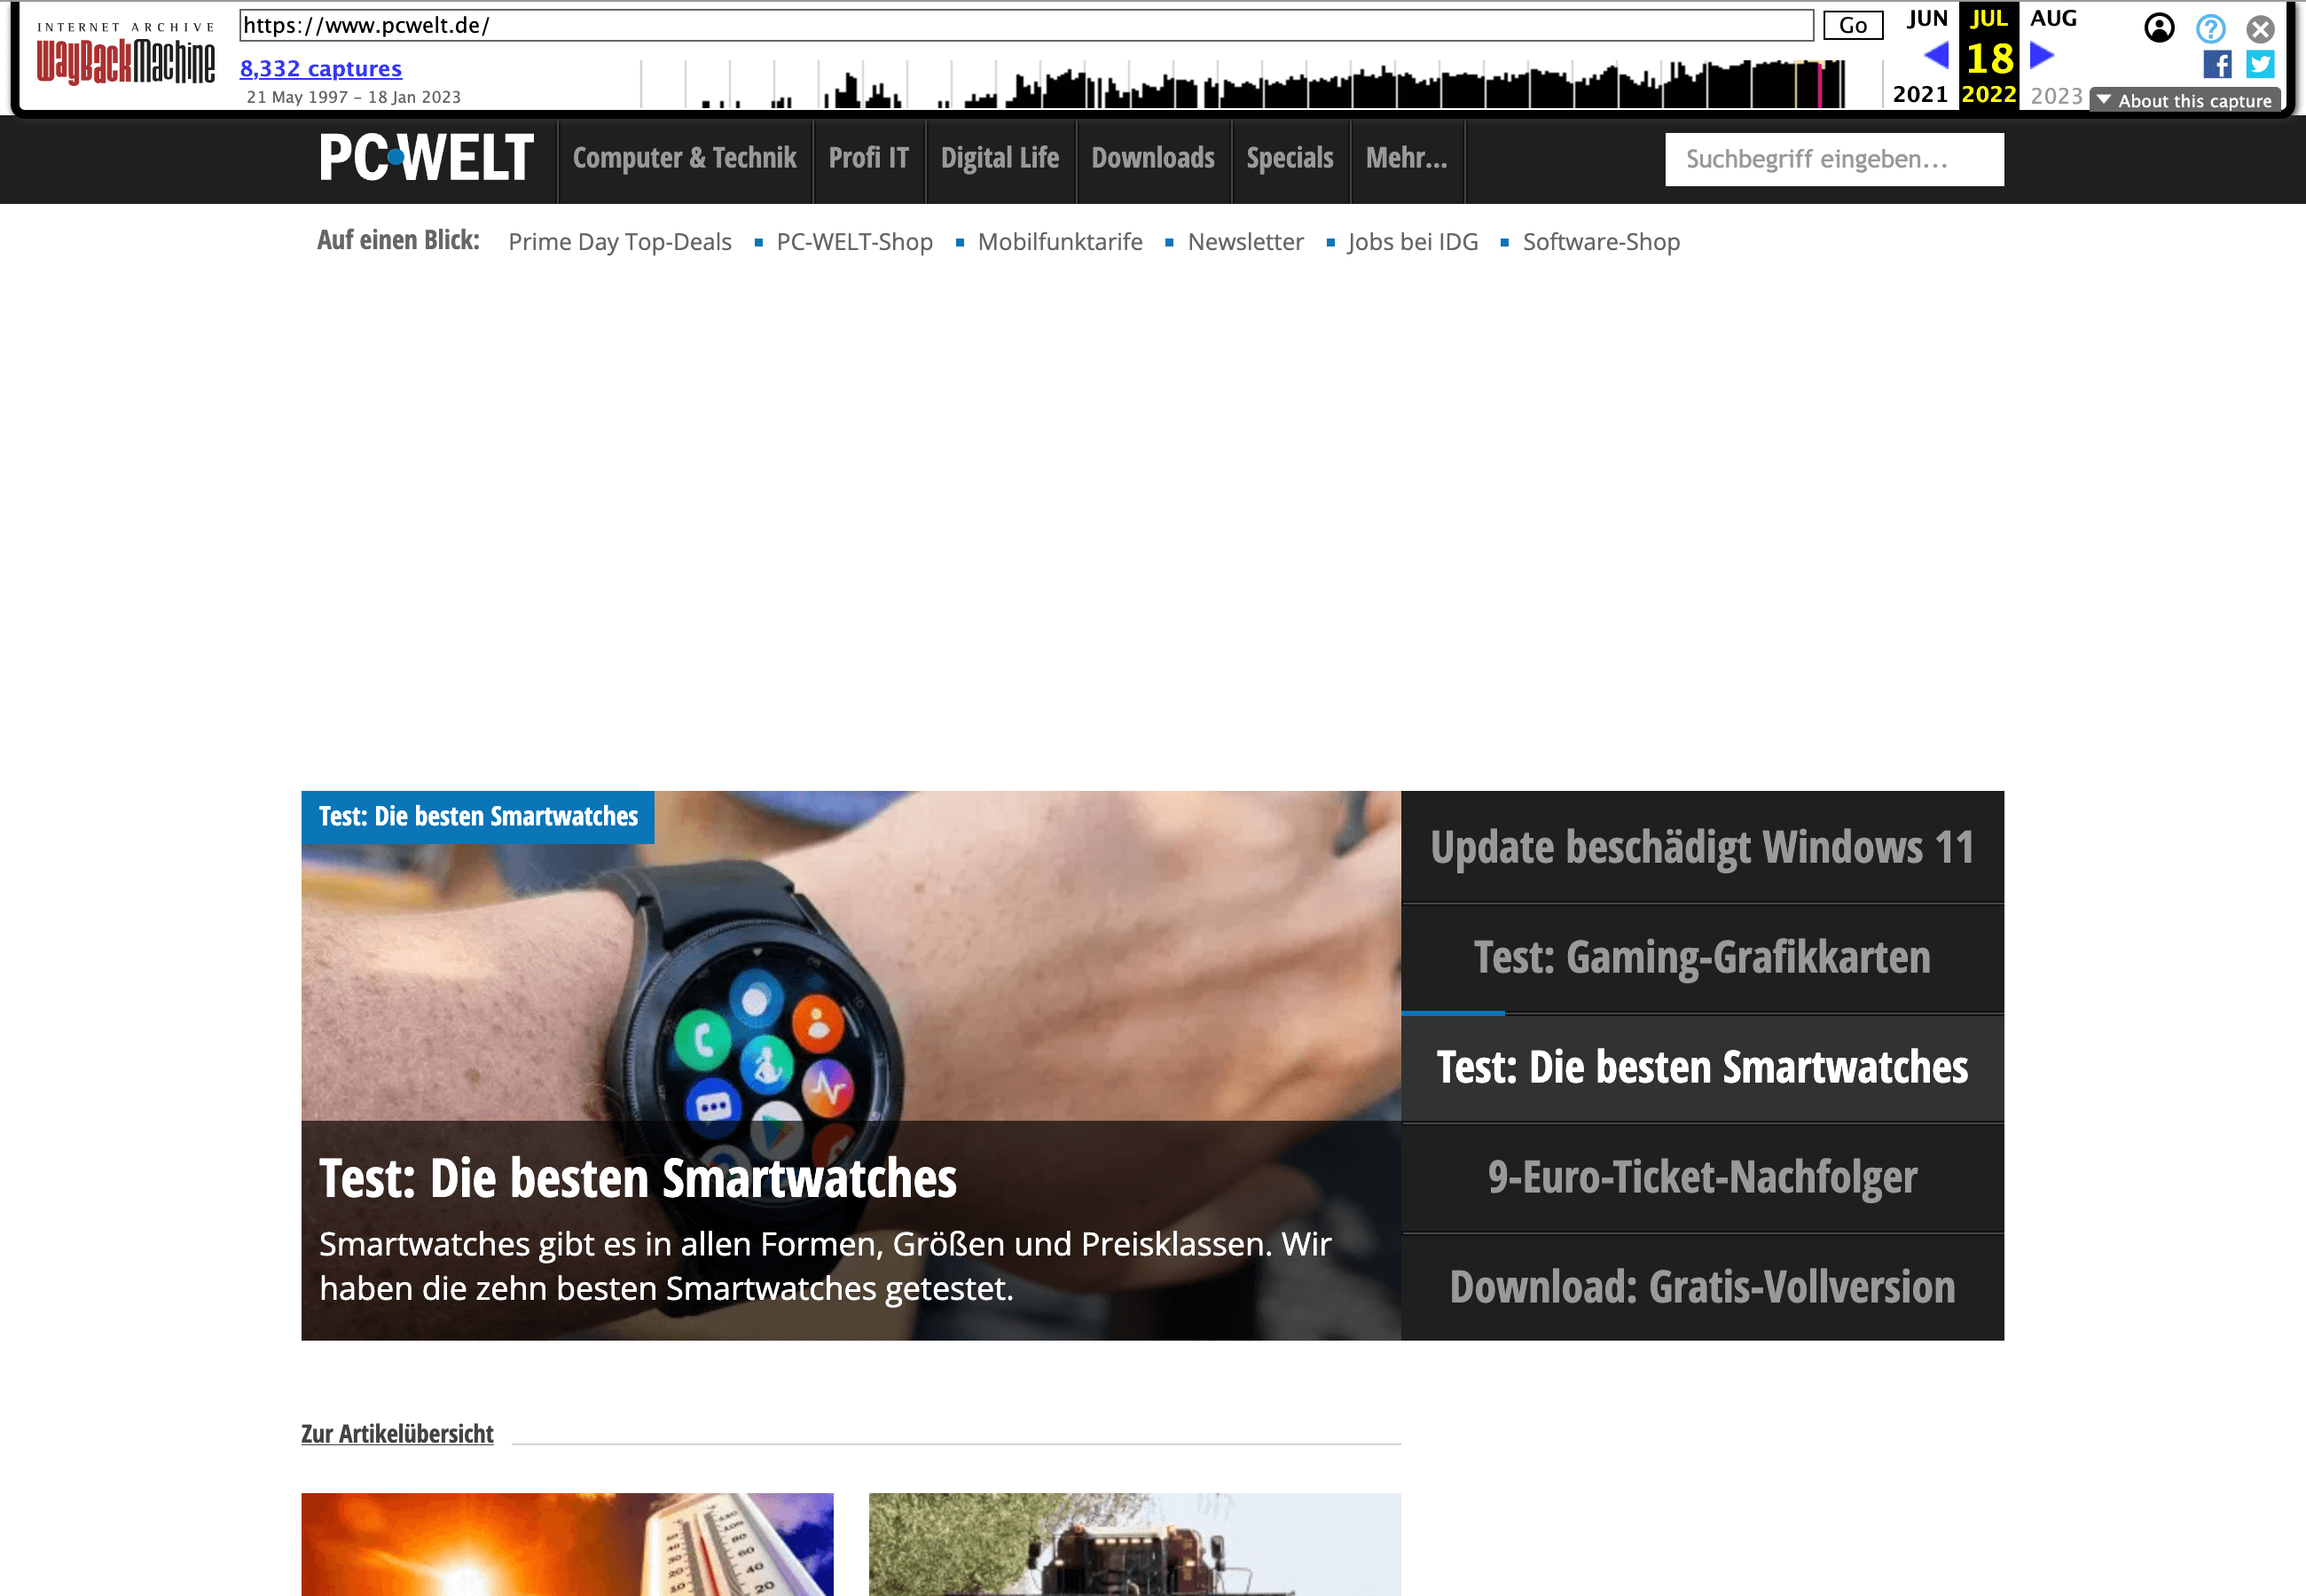 Das alte Design der Homepage von pcwelt.de ist dunkel gehalten und lädt nicht sofort zum Klick auf einen der Artikel ein.